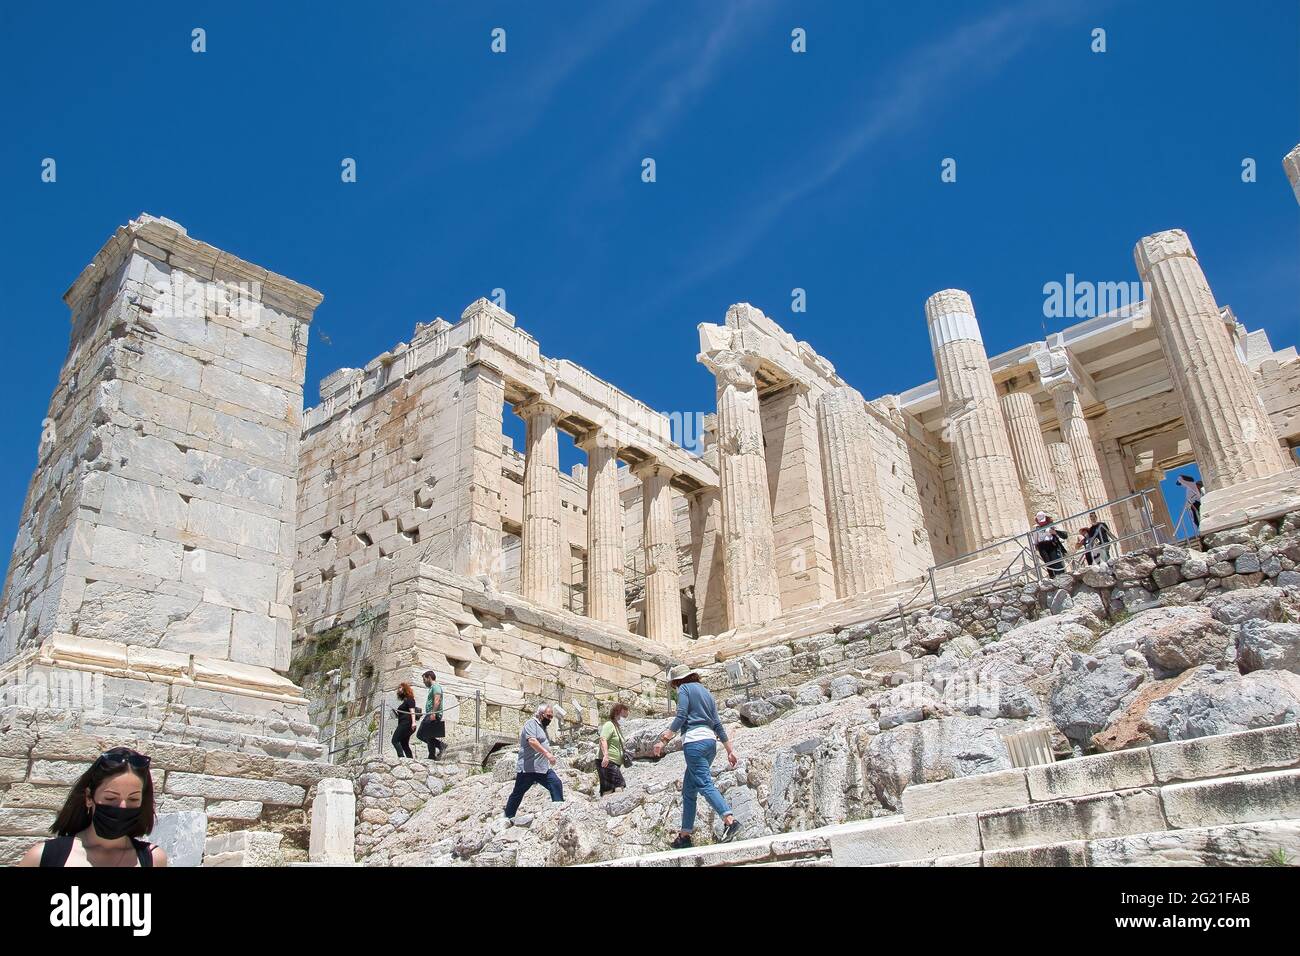 ATHEN, GRIECHENLAND - 12. Mai 2021: Das Gucci-Geschäft in Athen,  Panepistimiou Street, Athen, Griechenland. 5-12-2021 Stockfotografie - Alamy